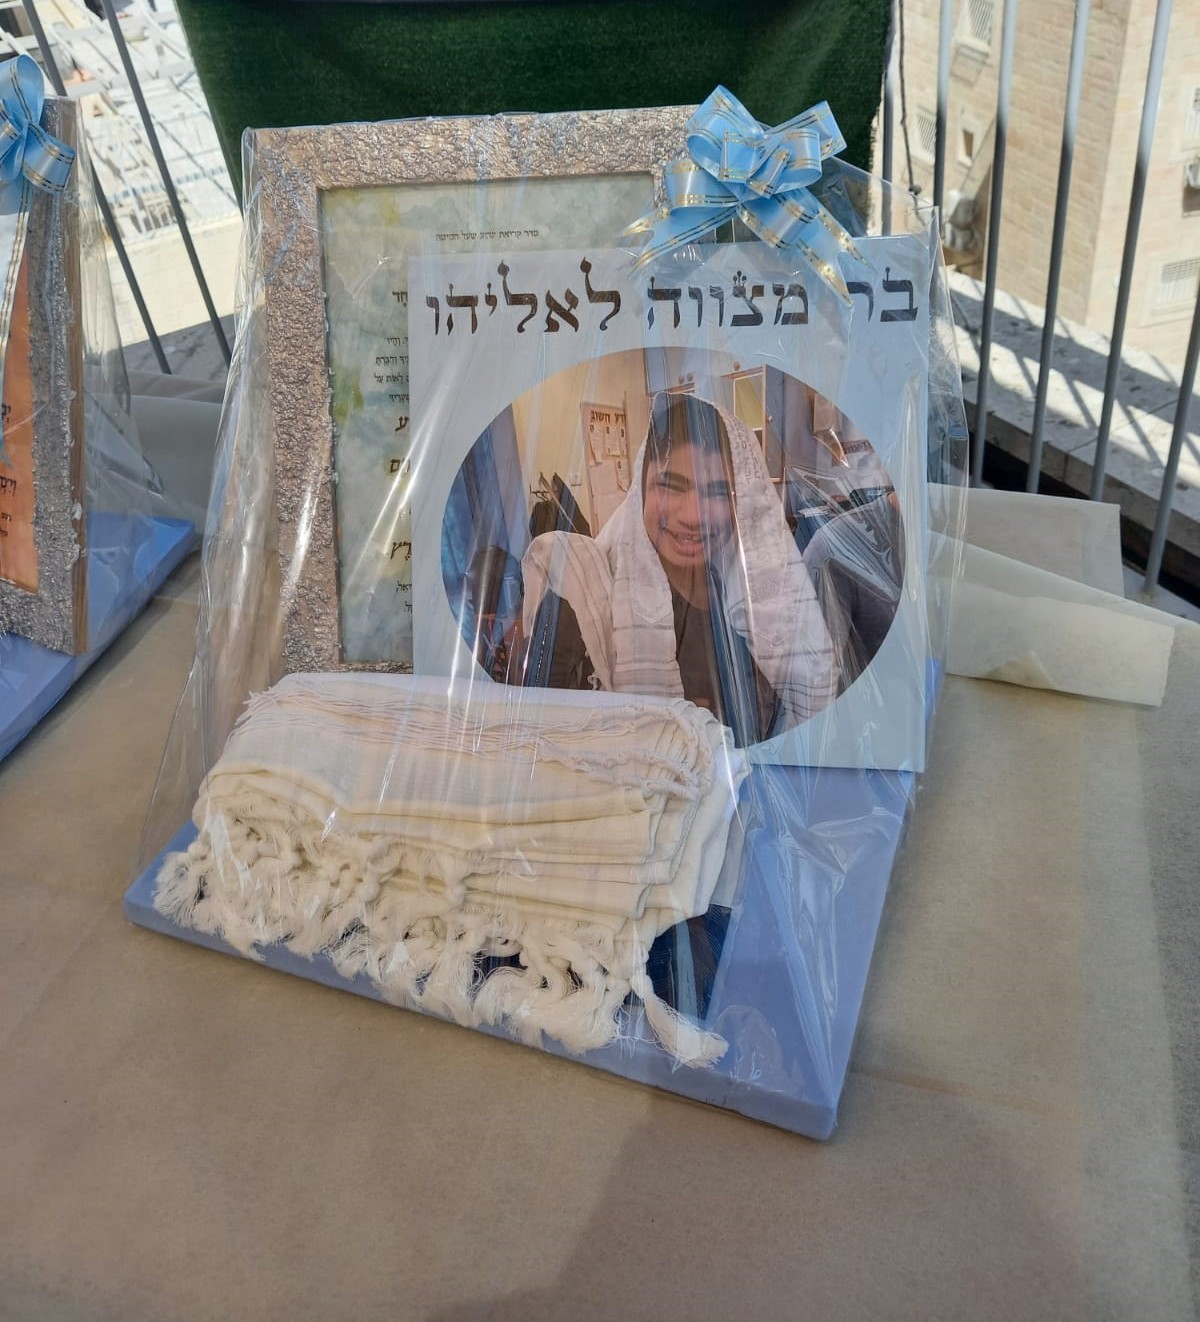 מתנה לבר מצוה עם תמונה של החתן Bar Mitzvah gift with picture of Bar Mitzvah boy